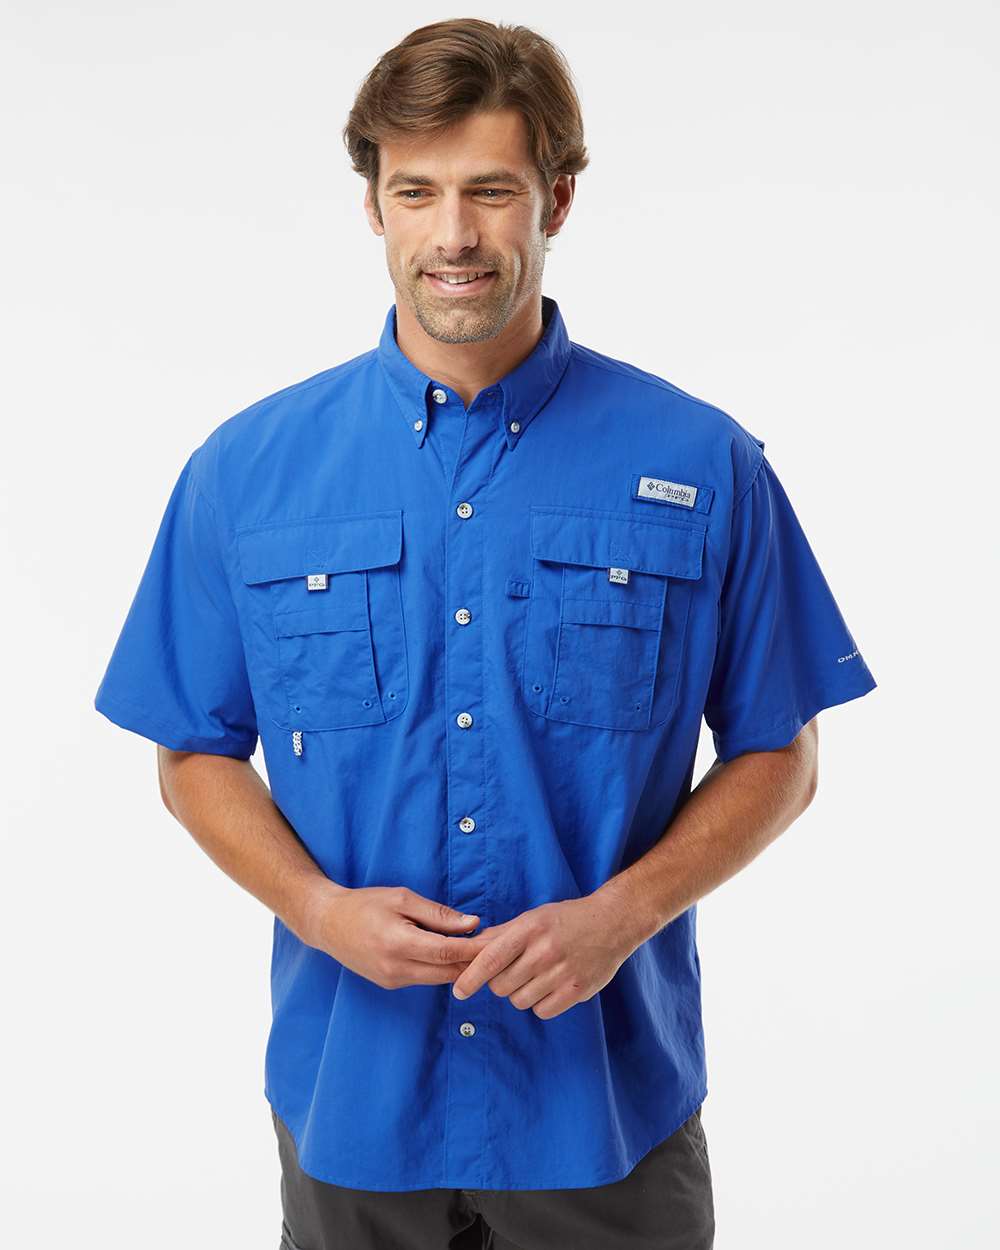 Columbia® - PFG Bahama II Short Sleeve Shirt, Stylish short sleeve